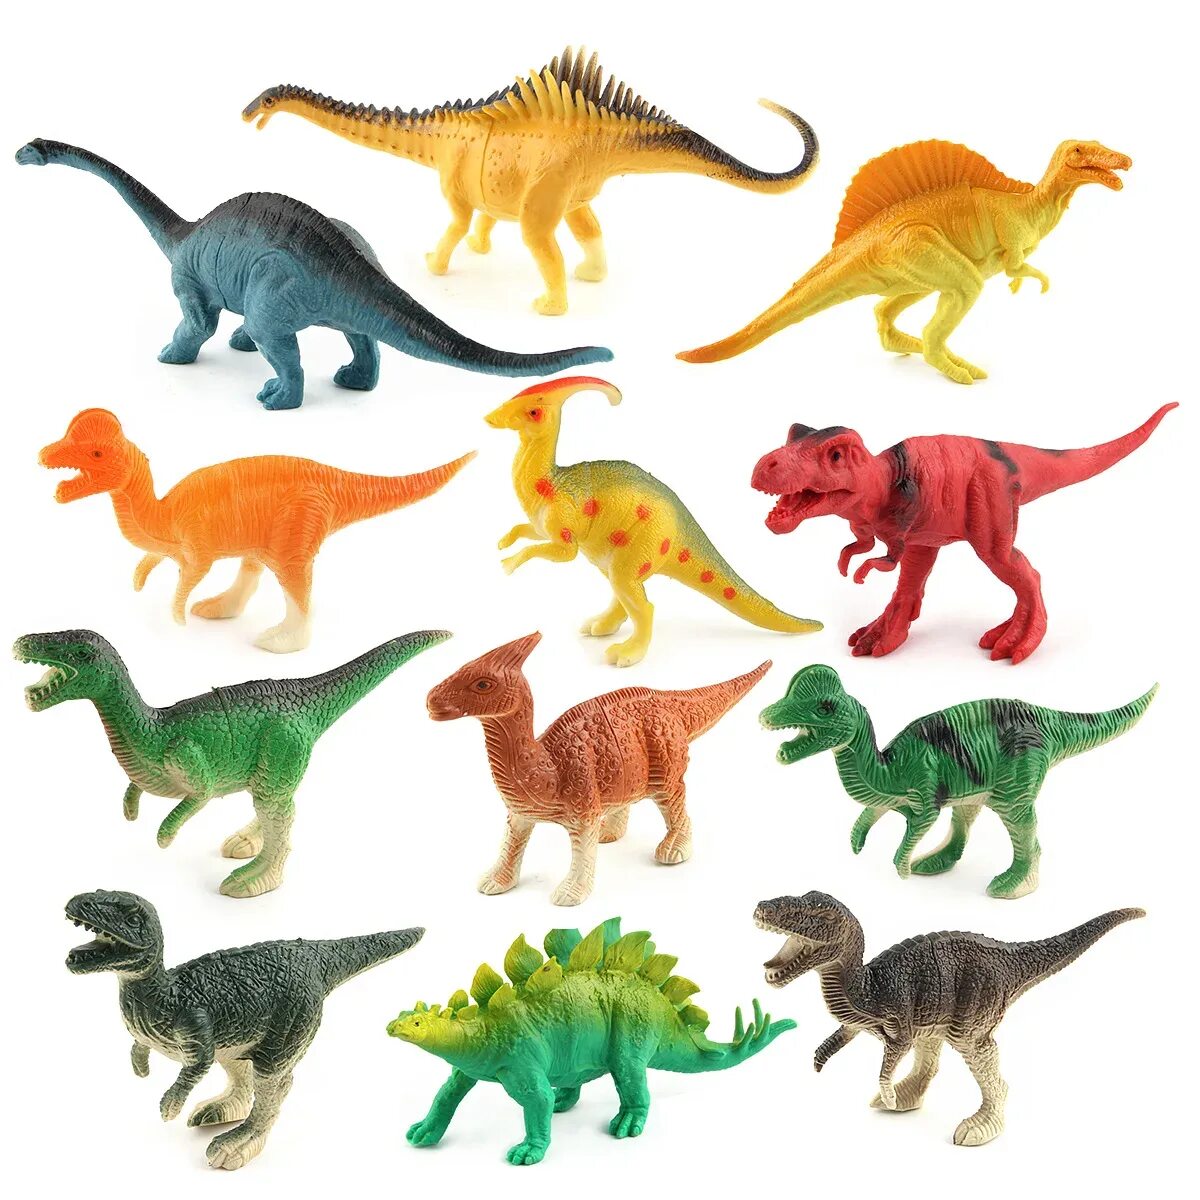 Игрушка динозавр. Коллекция игрушечных динозавров. Набор игрушечных динозавров. Динозавры игрушки коллекция.